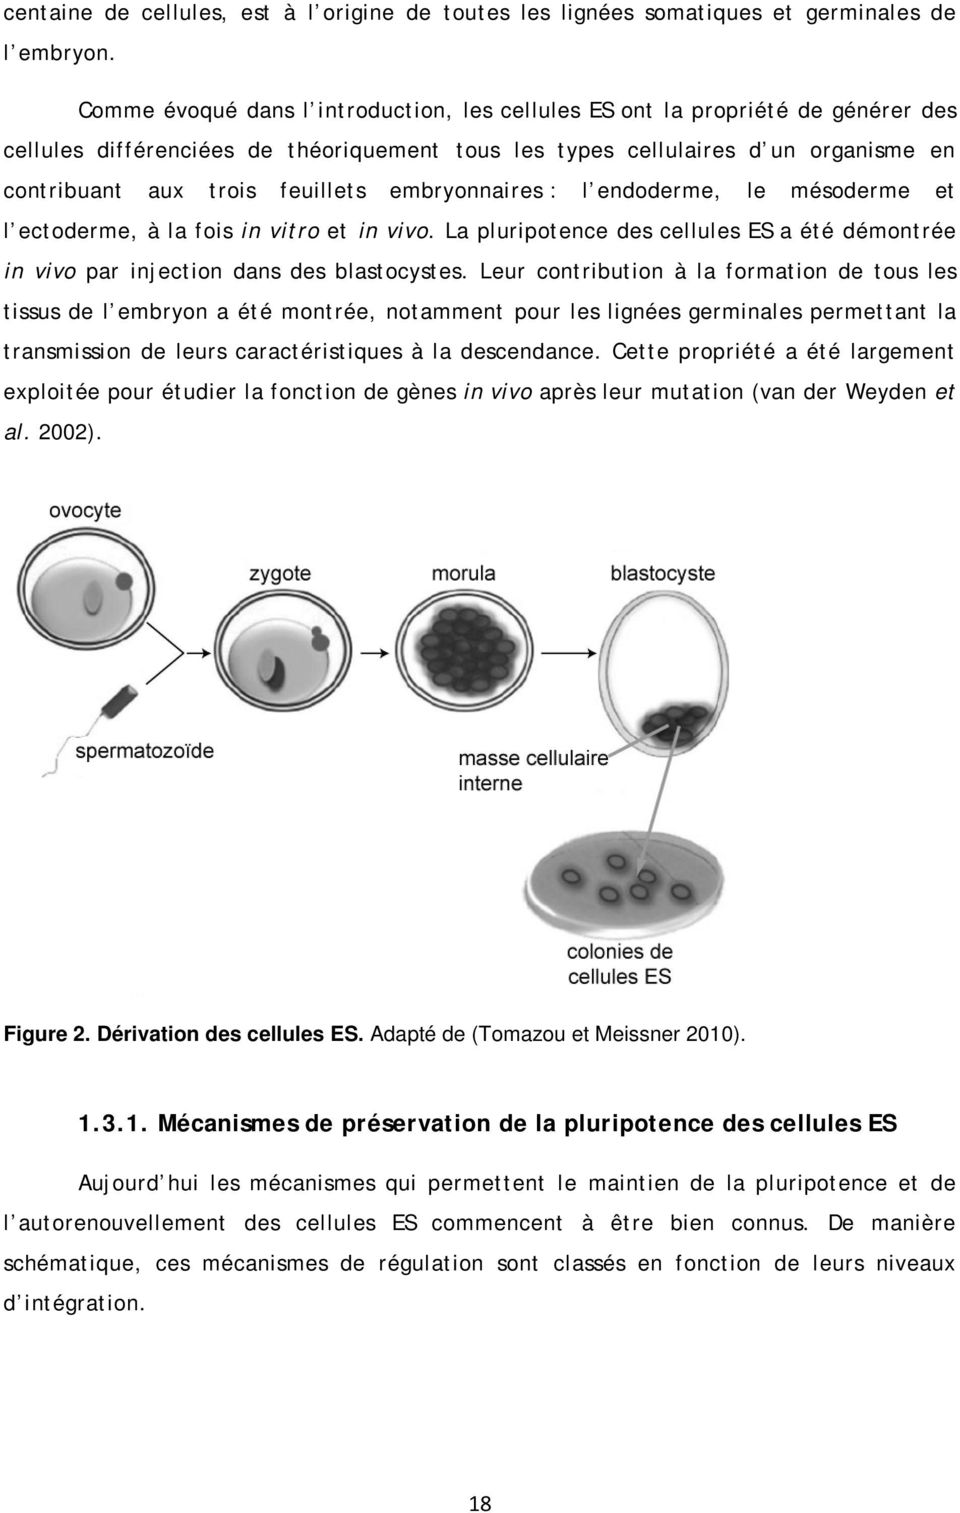 embryonnaires : l endoderme, le mésoderme et l ectoderme, à la fois in vitro et in vivo. La pluripotence des cellules ES a été démontrée in vivo par injection dans des blastocystes.